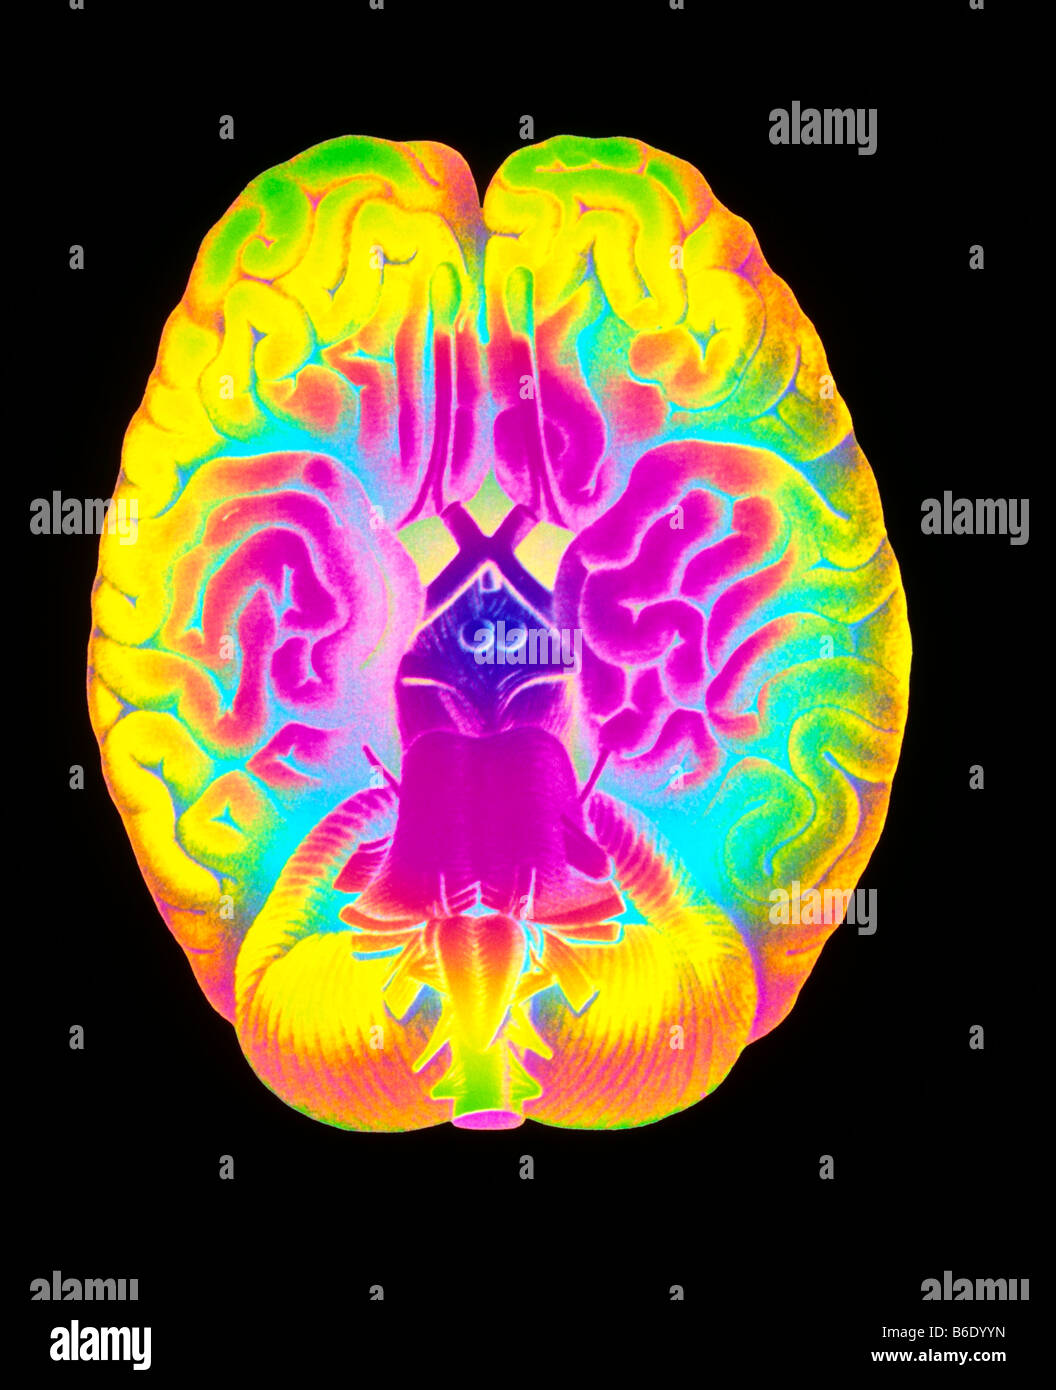 Menschliche Gehirn, Computer-enhanced historische Kunstwerke des menschlichen Gehirns. Stockfoto